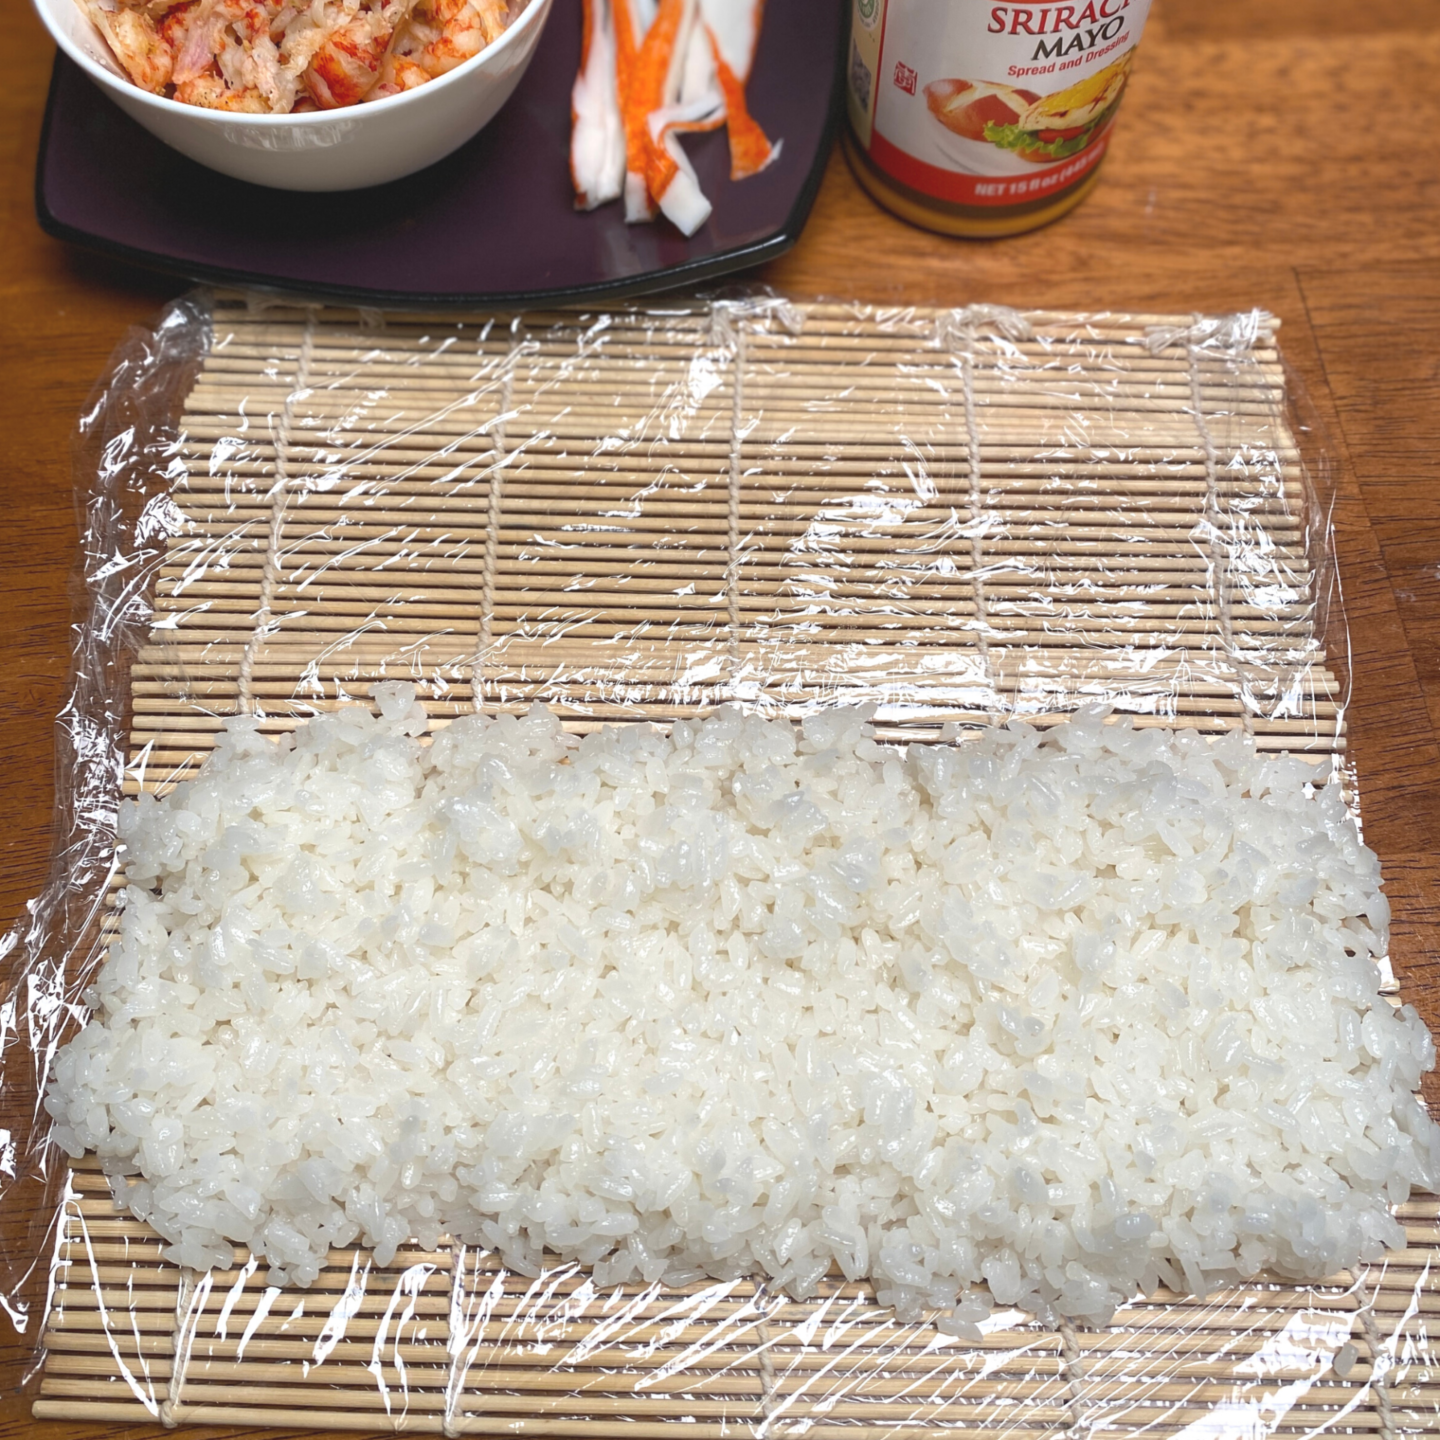 sushi rice on mat